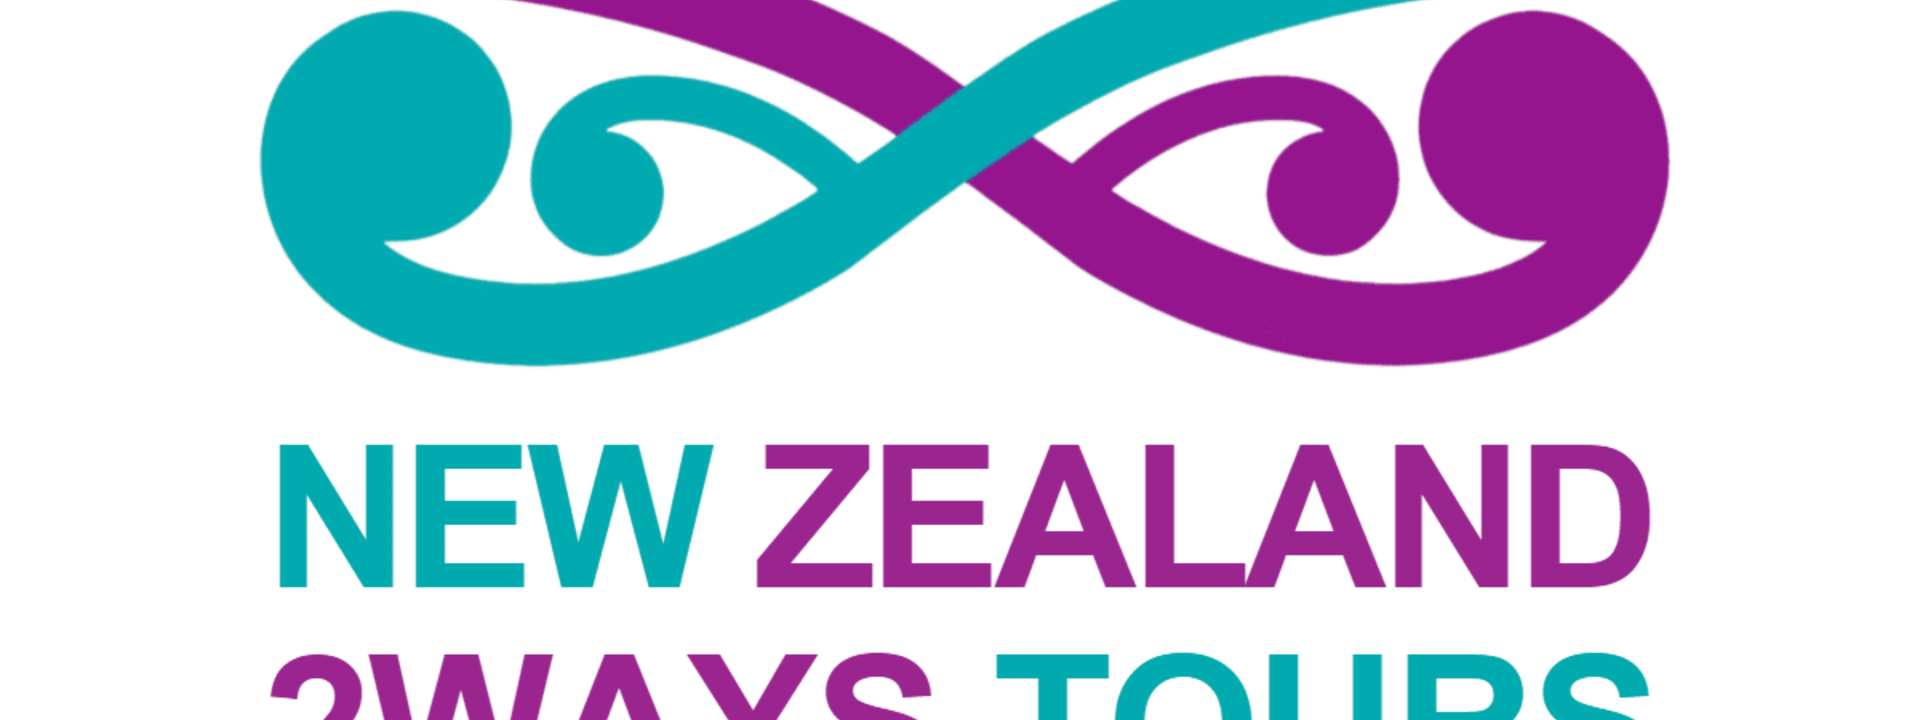 2ways-tours-new-zealand-logo.png